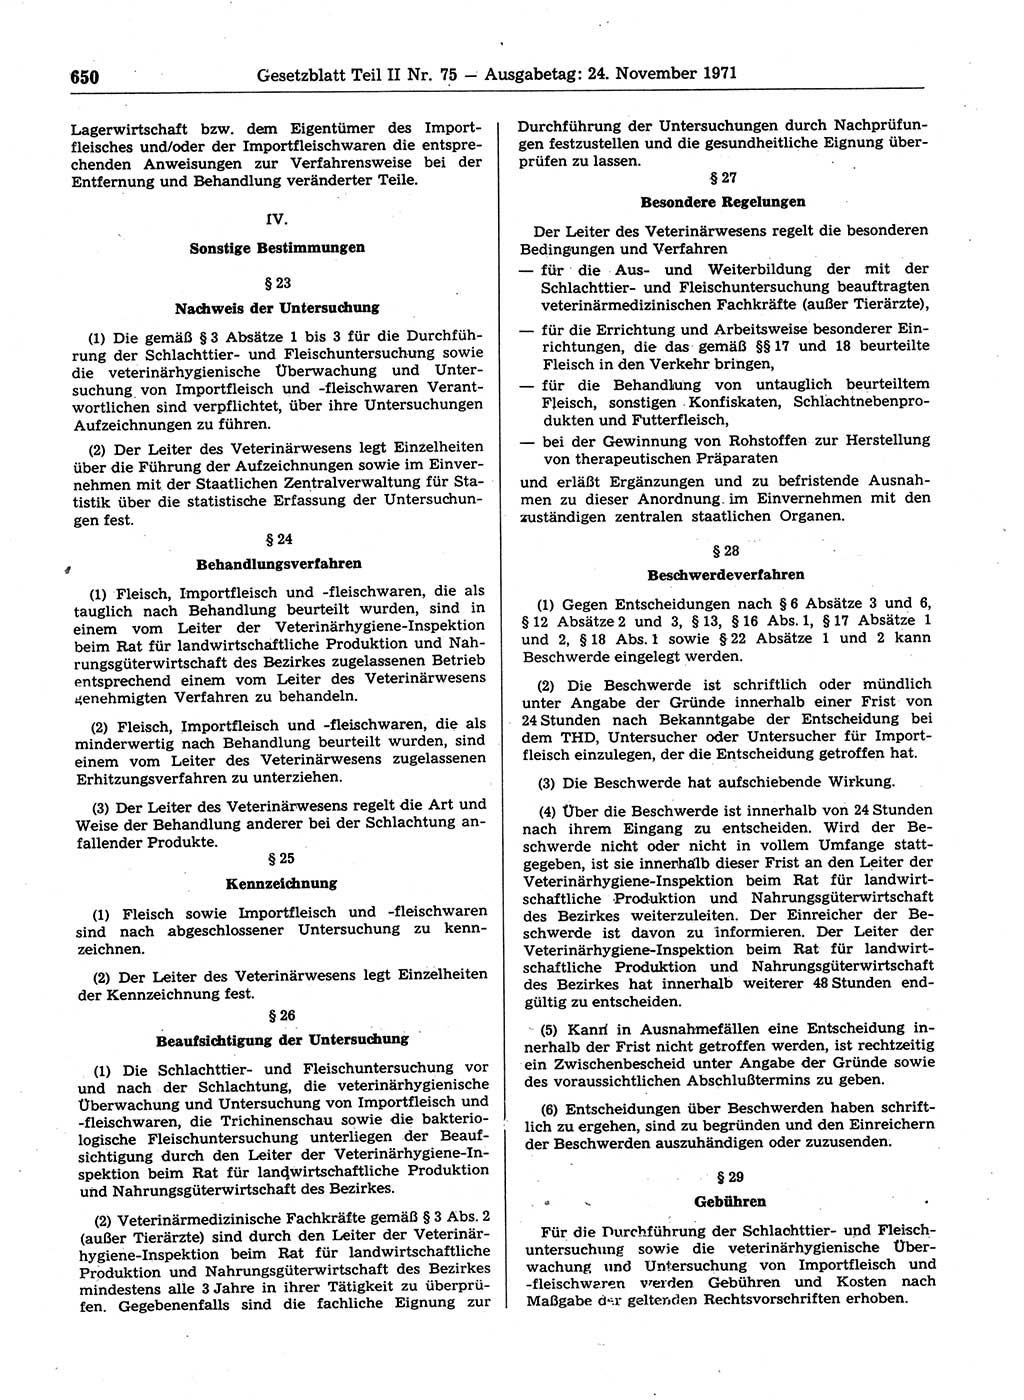 Gesetzblatt (GBl.) der Deutschen Demokratischen Republik (DDR) Teil ⅠⅠ 1971, Seite 650 (GBl. DDR ⅠⅠ 1971, S. 650)